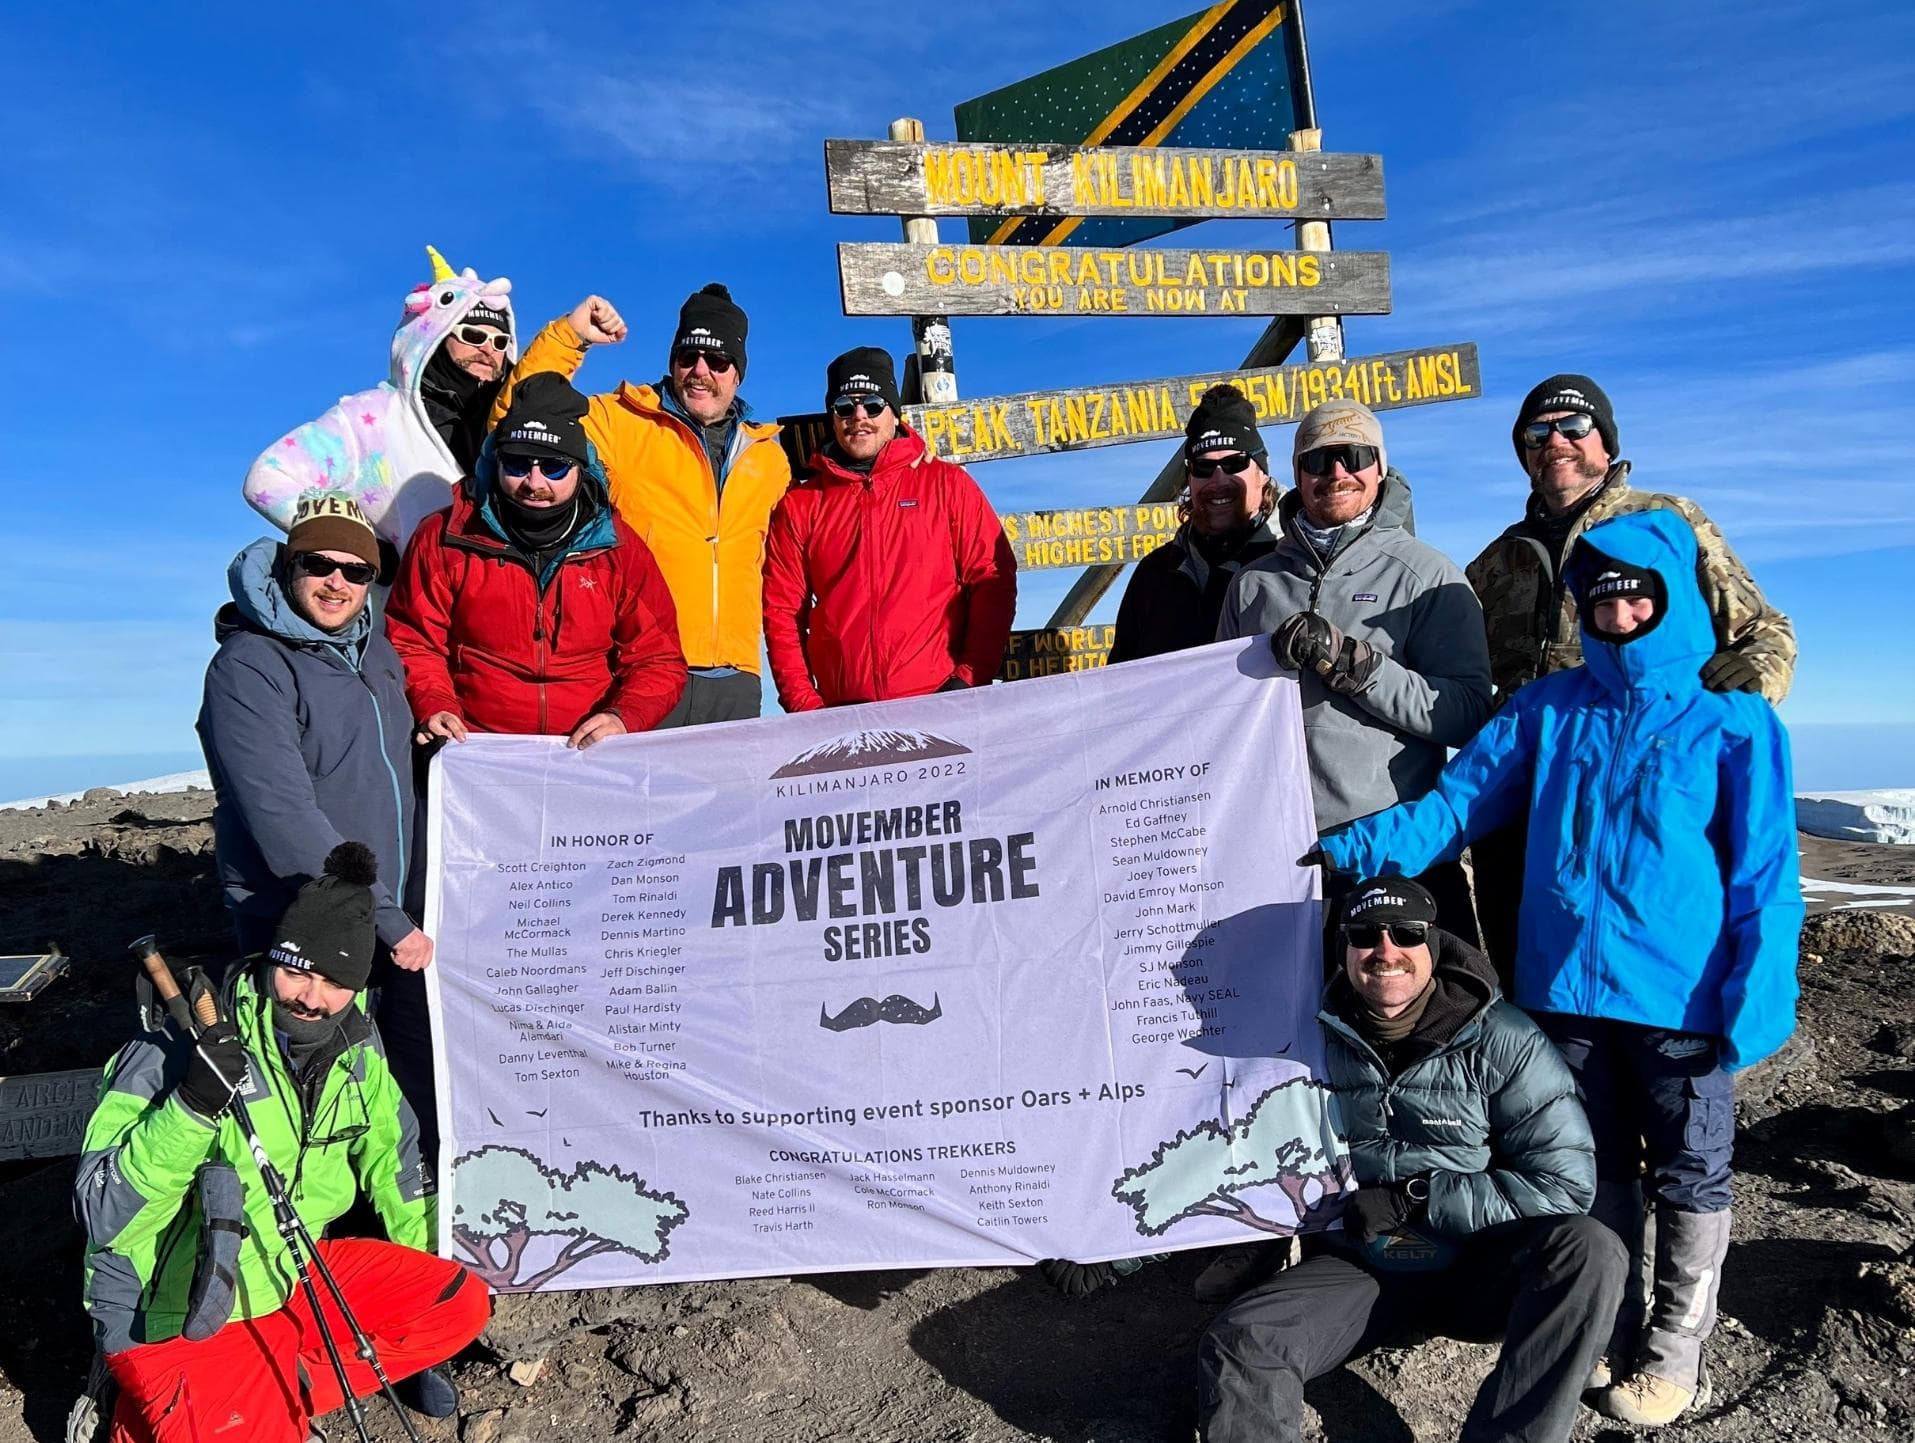 Movember Adventure Series Team at Mt. Kilimanjaro Summit